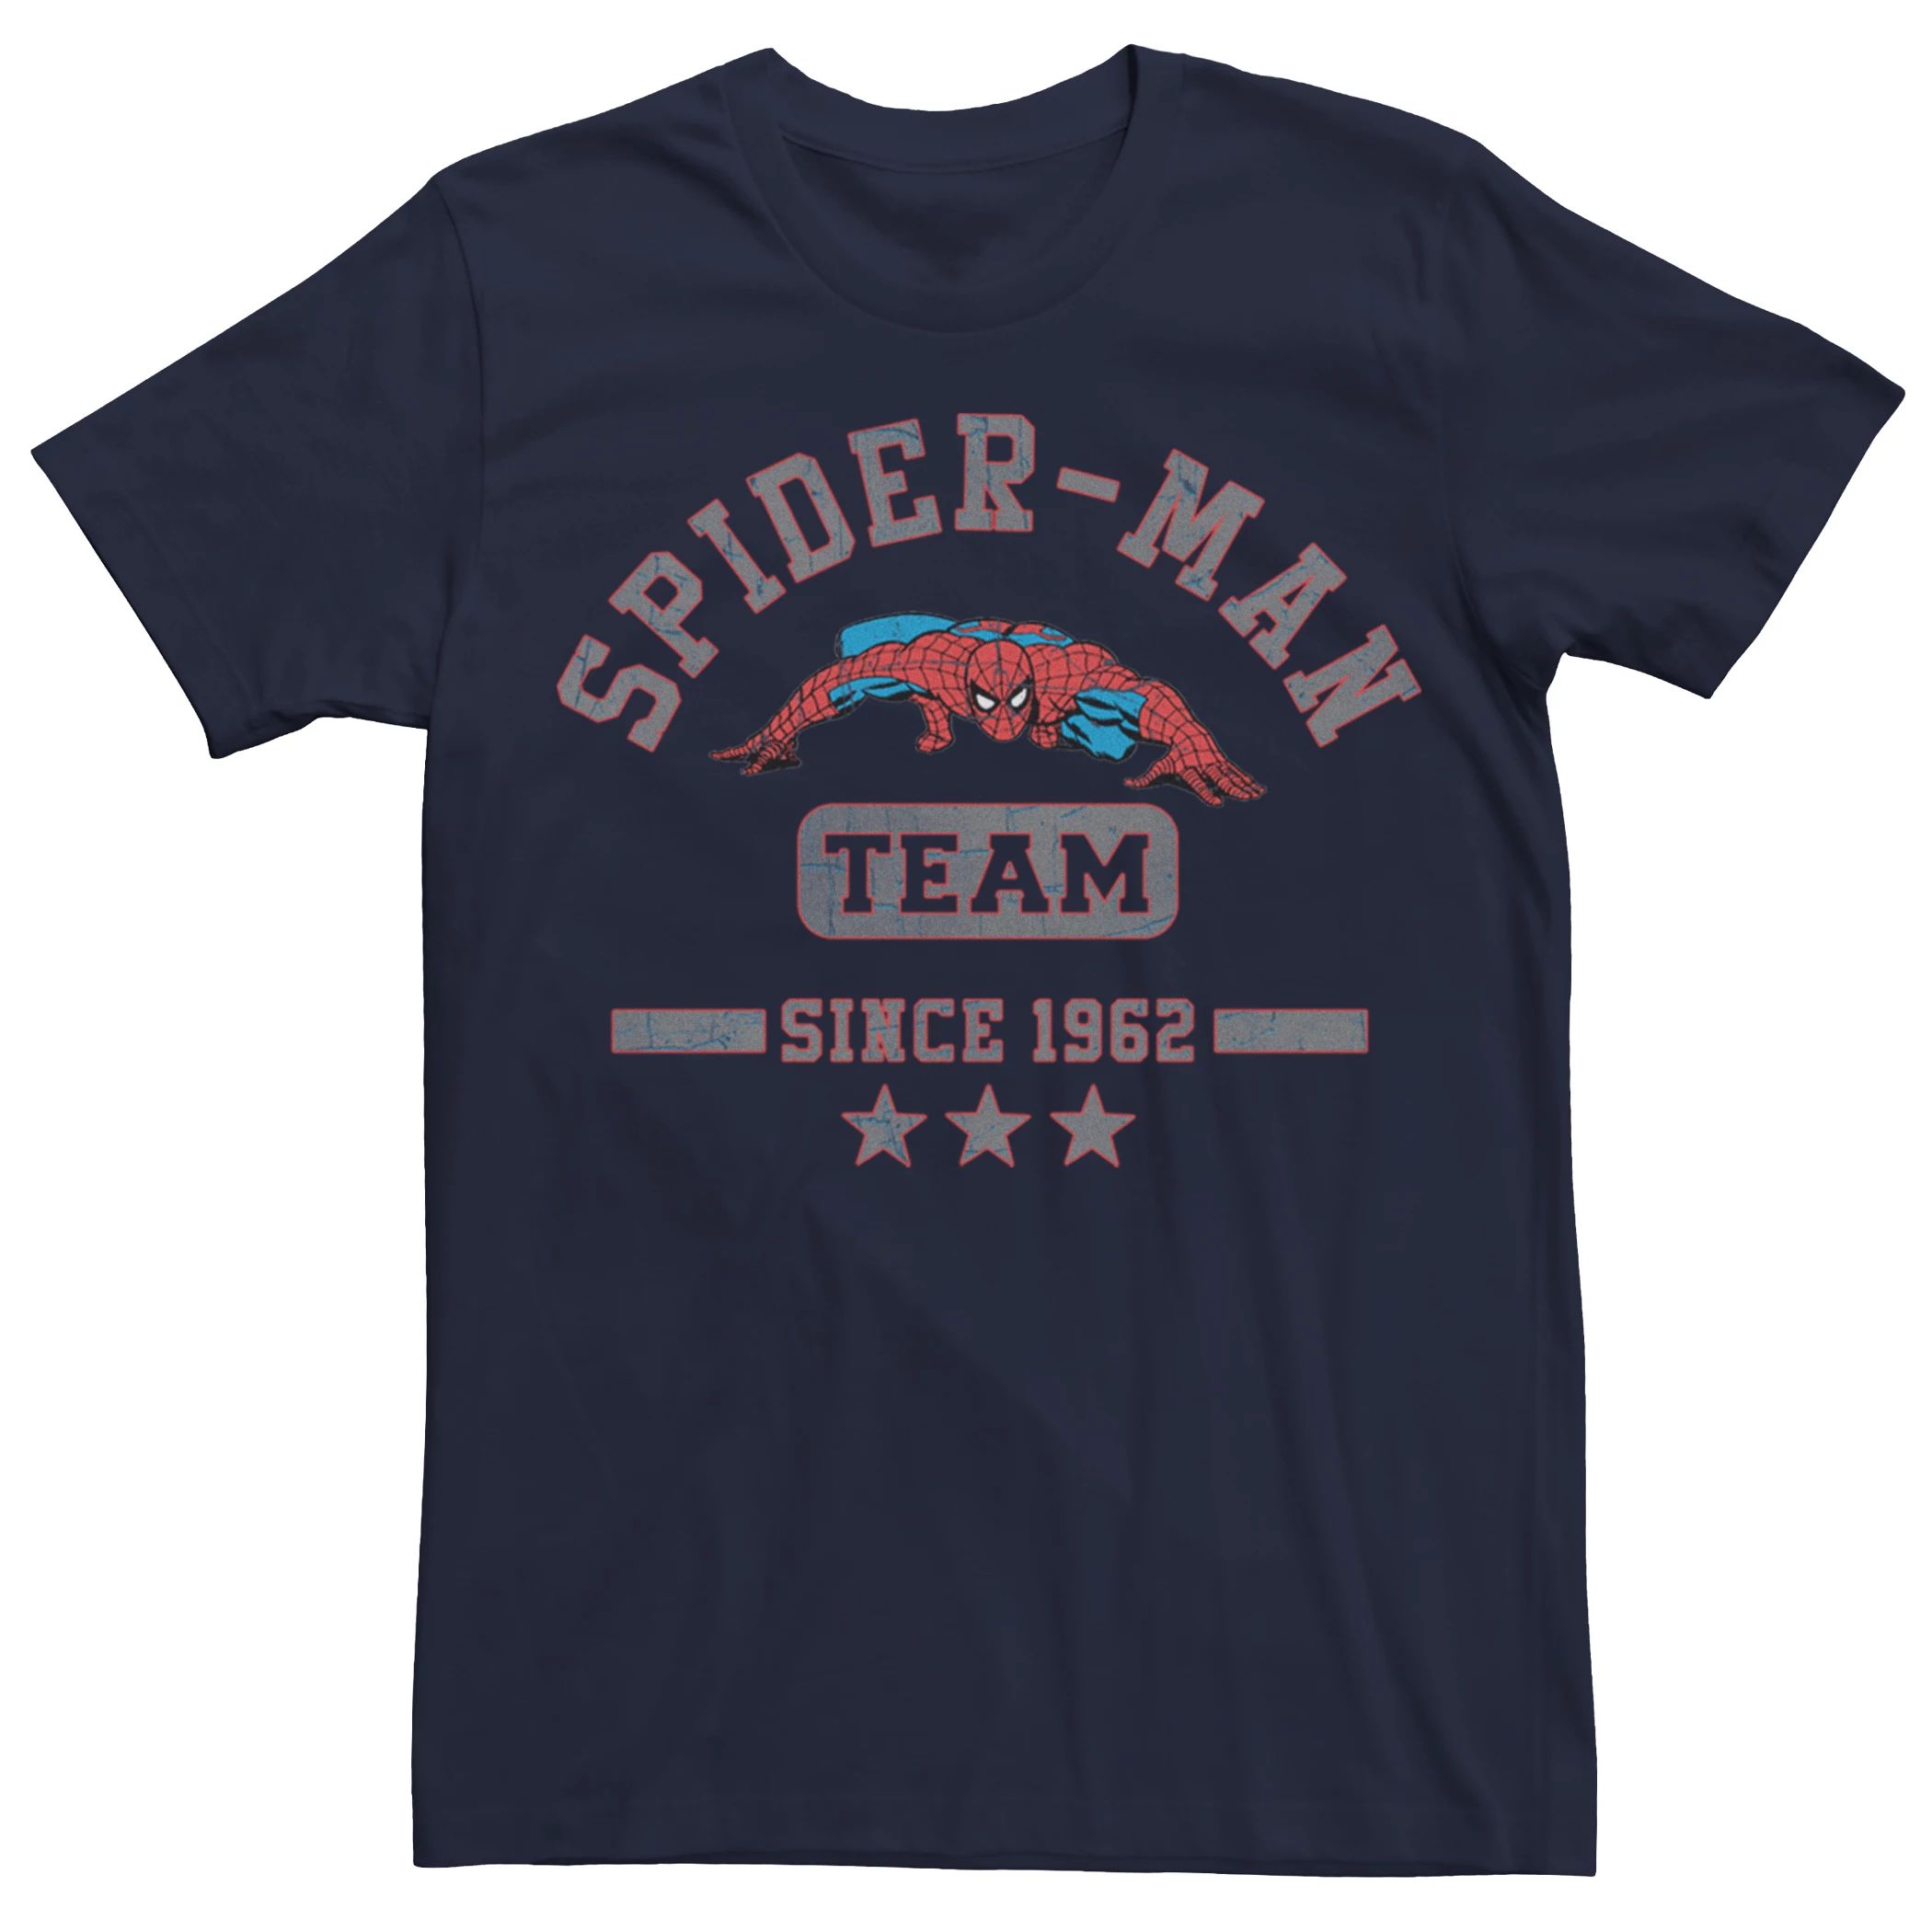 

Мужская футболка команды Человека-паука Licensed Character